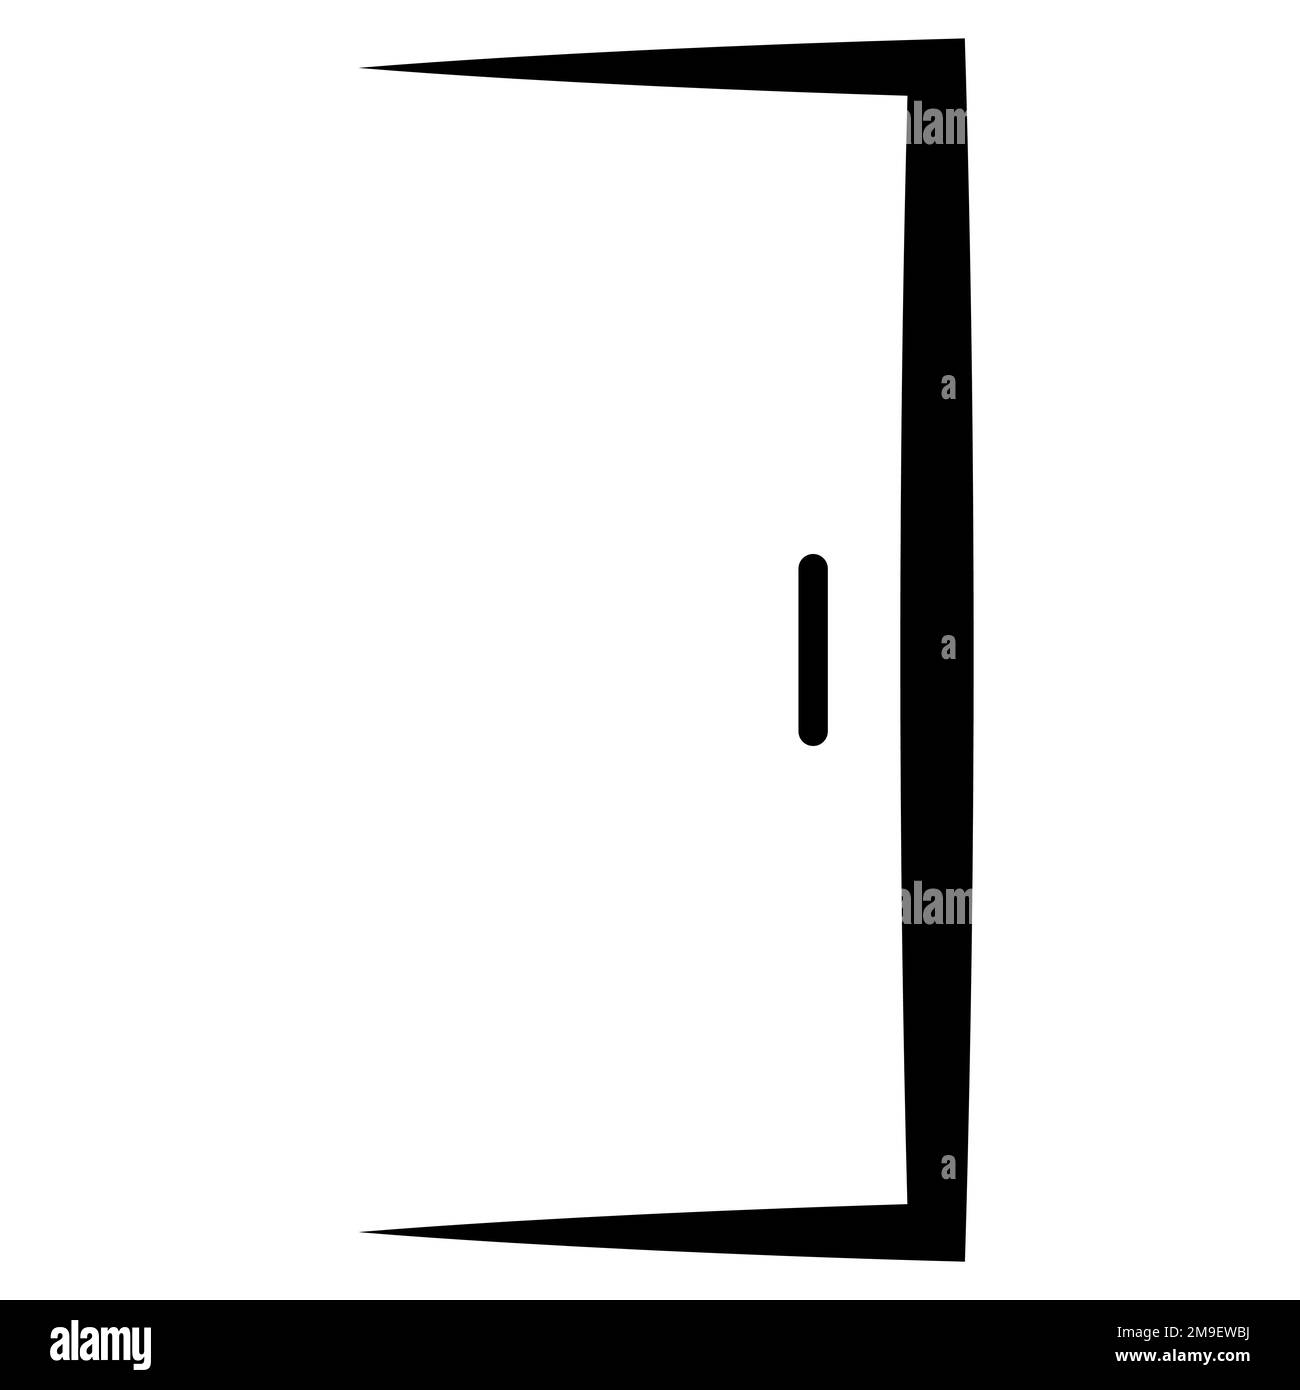 Door open logo, icon door house, outline close office frame Stock Vector